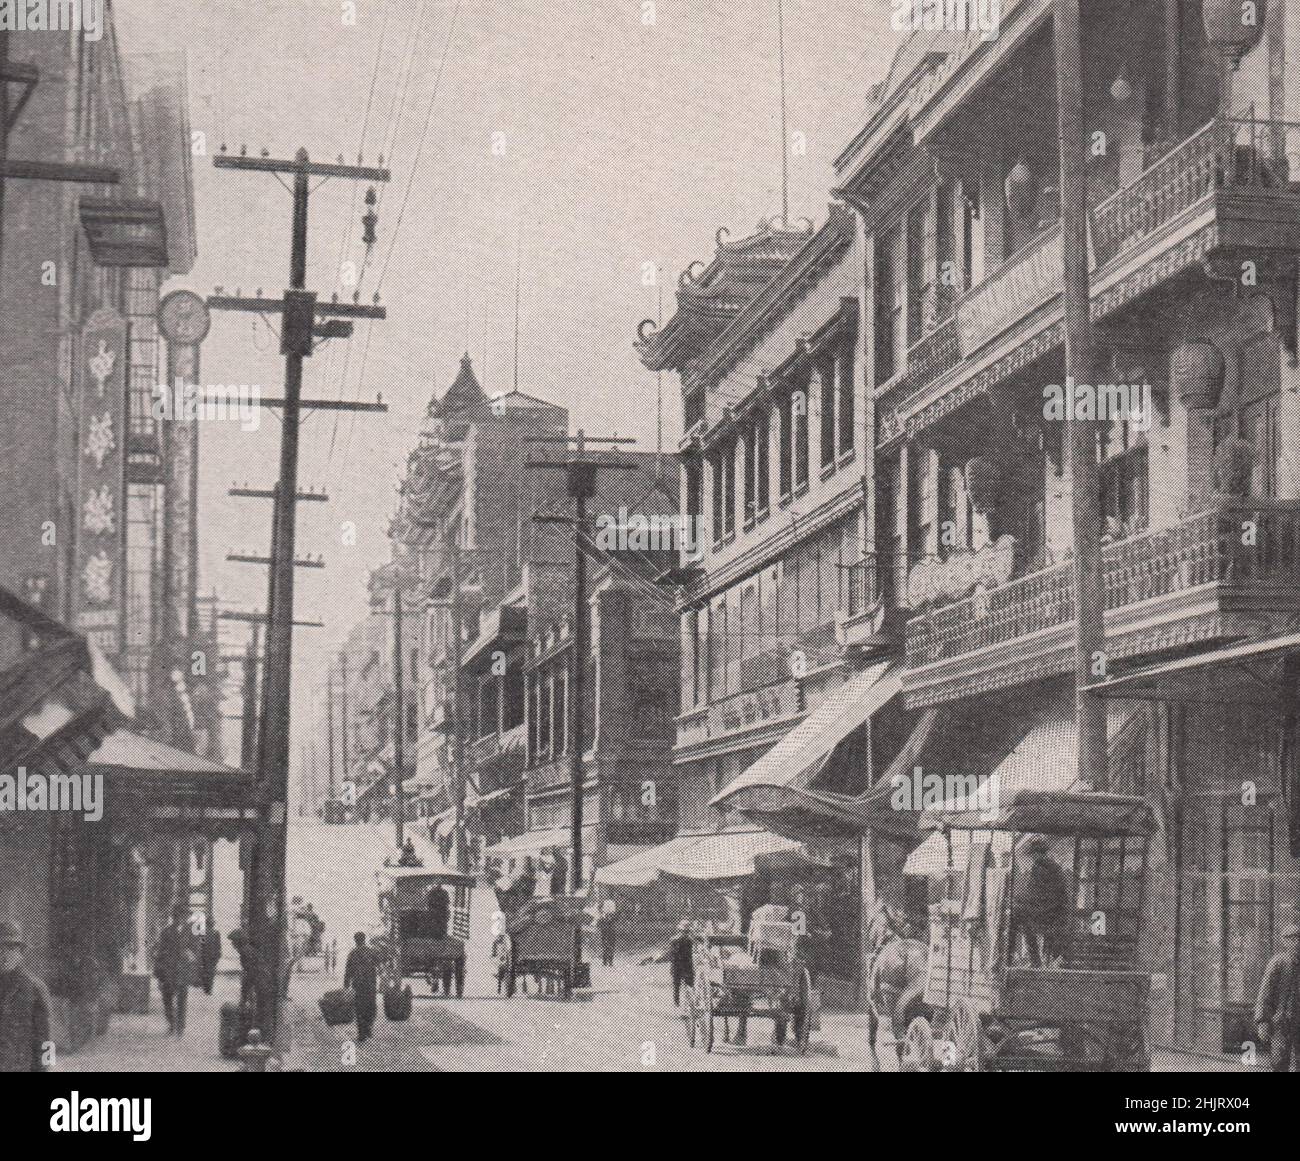 Dans la section chinoise de San Francisco reconstruit. Californie (1923) Banque D'Images